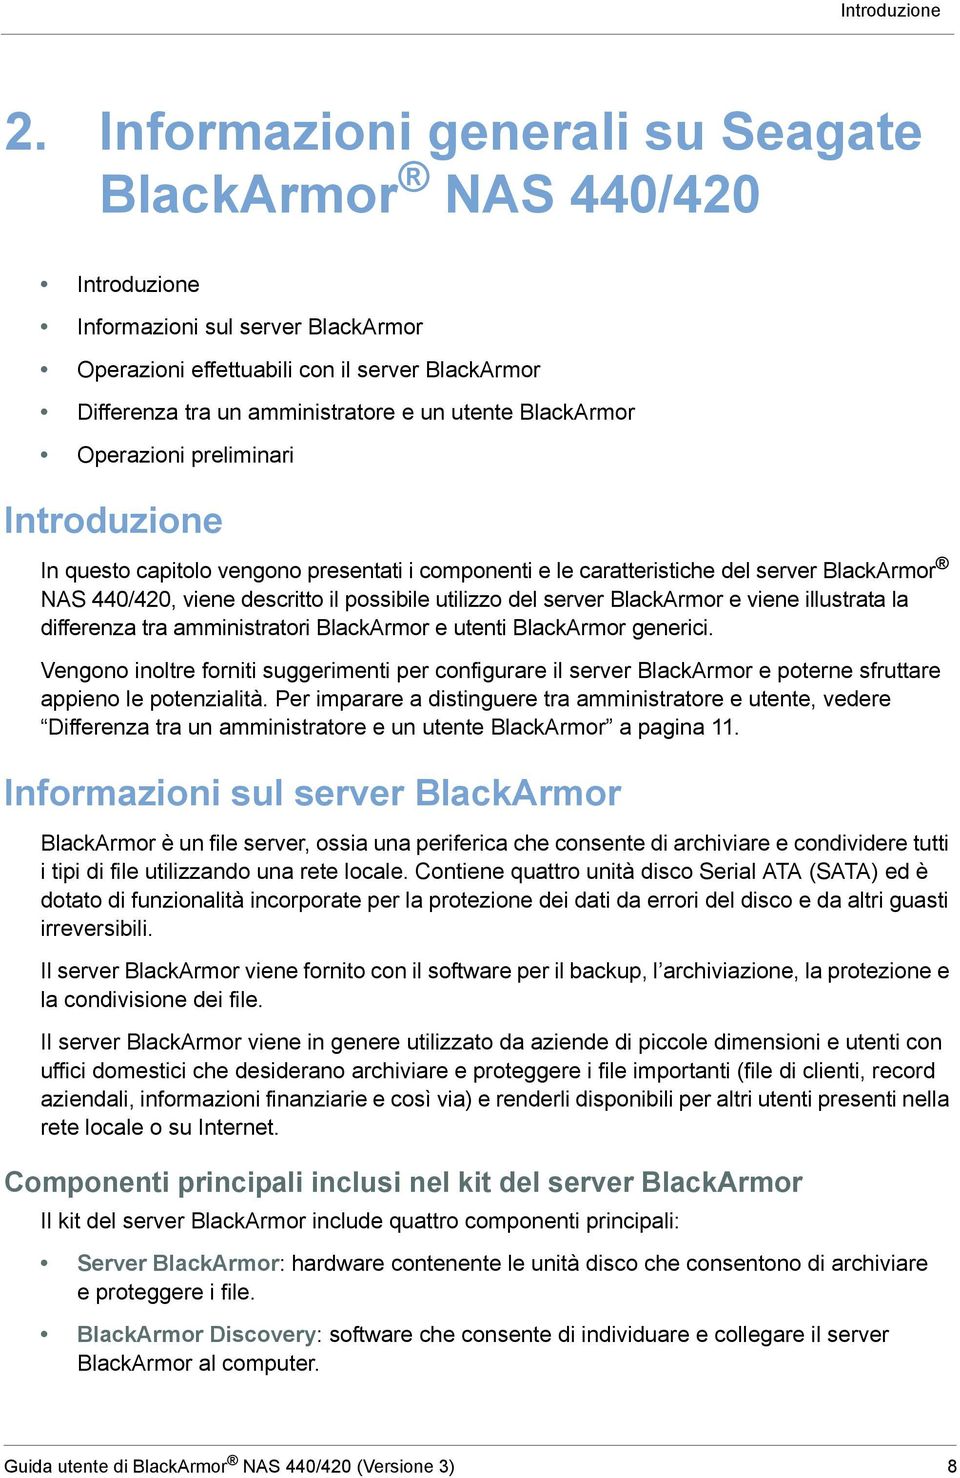 BlackArmor Operazioni preliminari Introduzione In questo capitolo vengono presentati i componenti e le caratteristiche del server BlackArmor NAS 440/420, viene descritto il possibile utilizzo del